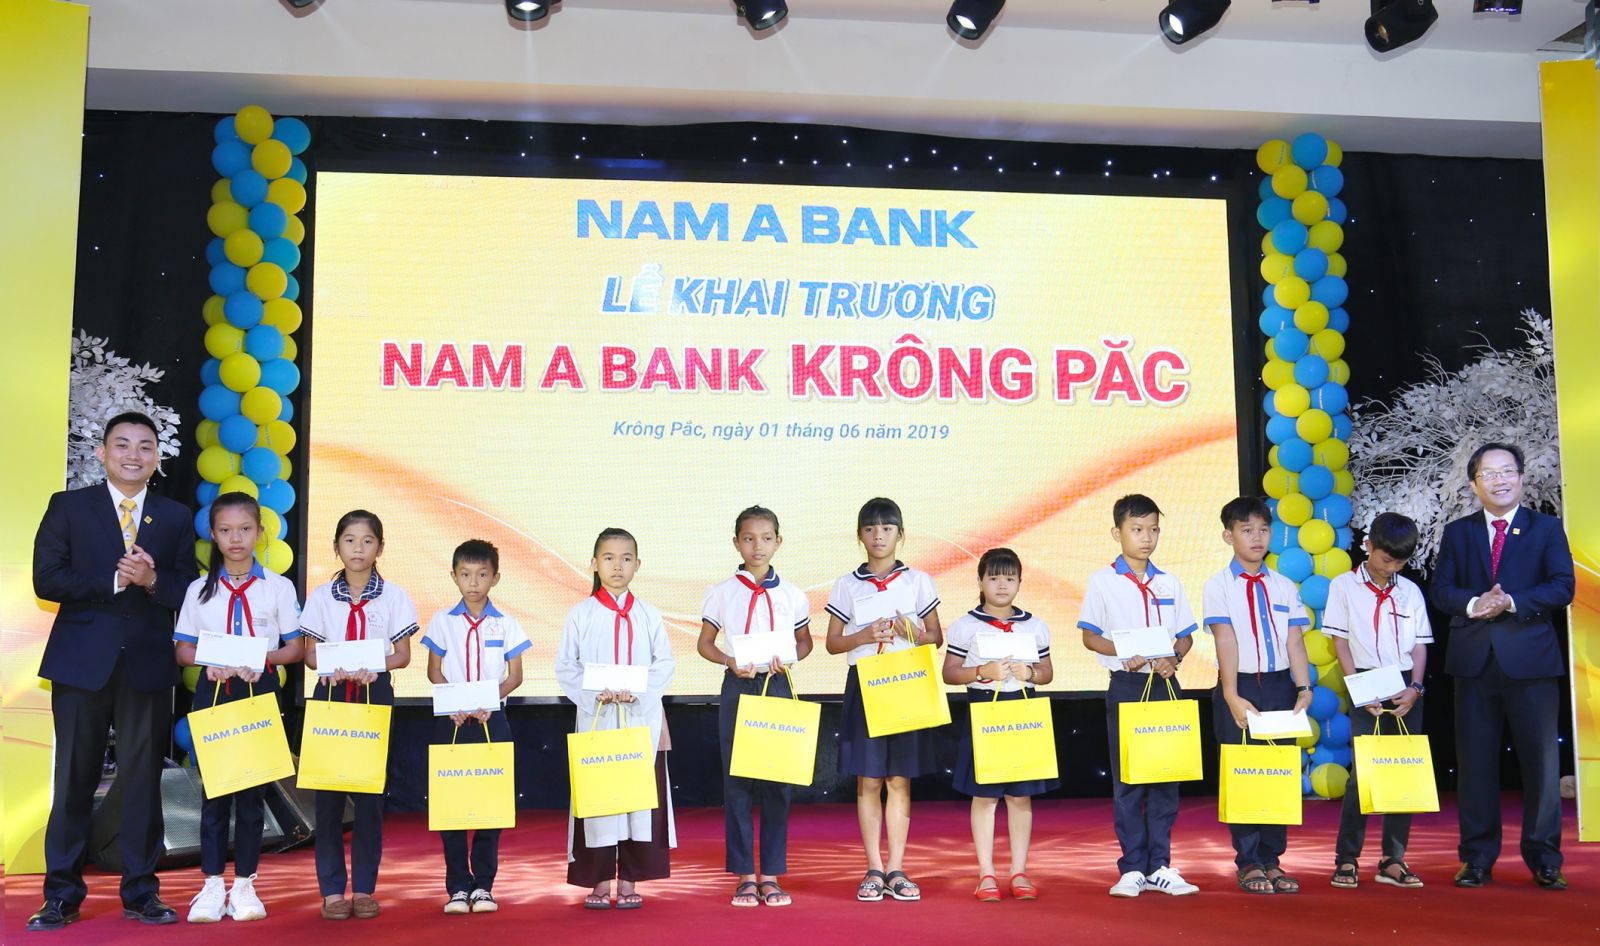 Ông Võ Anh Tú – Giám đốc Nam A Bank Đắk Lắk (bên phải) và Ông Vũ Xuân Phúc – Giám đốc Nam A Bank Krông Păc (bên trái) trao học bổng cho các em  học sinh nghèo vượt khó.